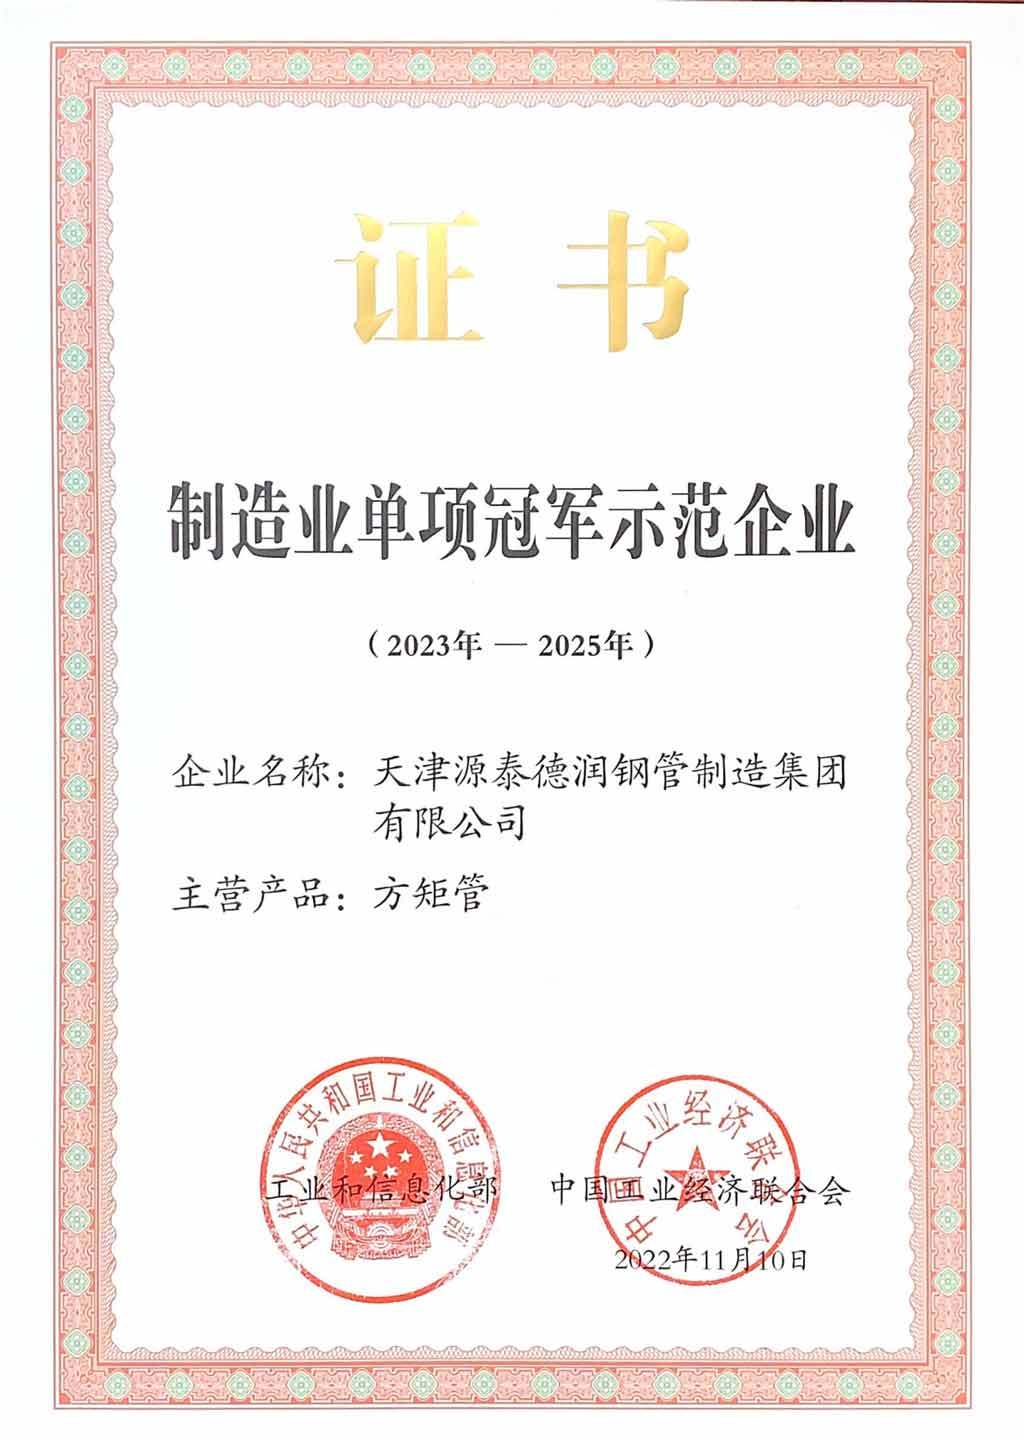 Yuantai Derun Steel Pipe Manufacturing Group - Certificado Nacional de campeón individual de la industria de fabricación de control cuadrado